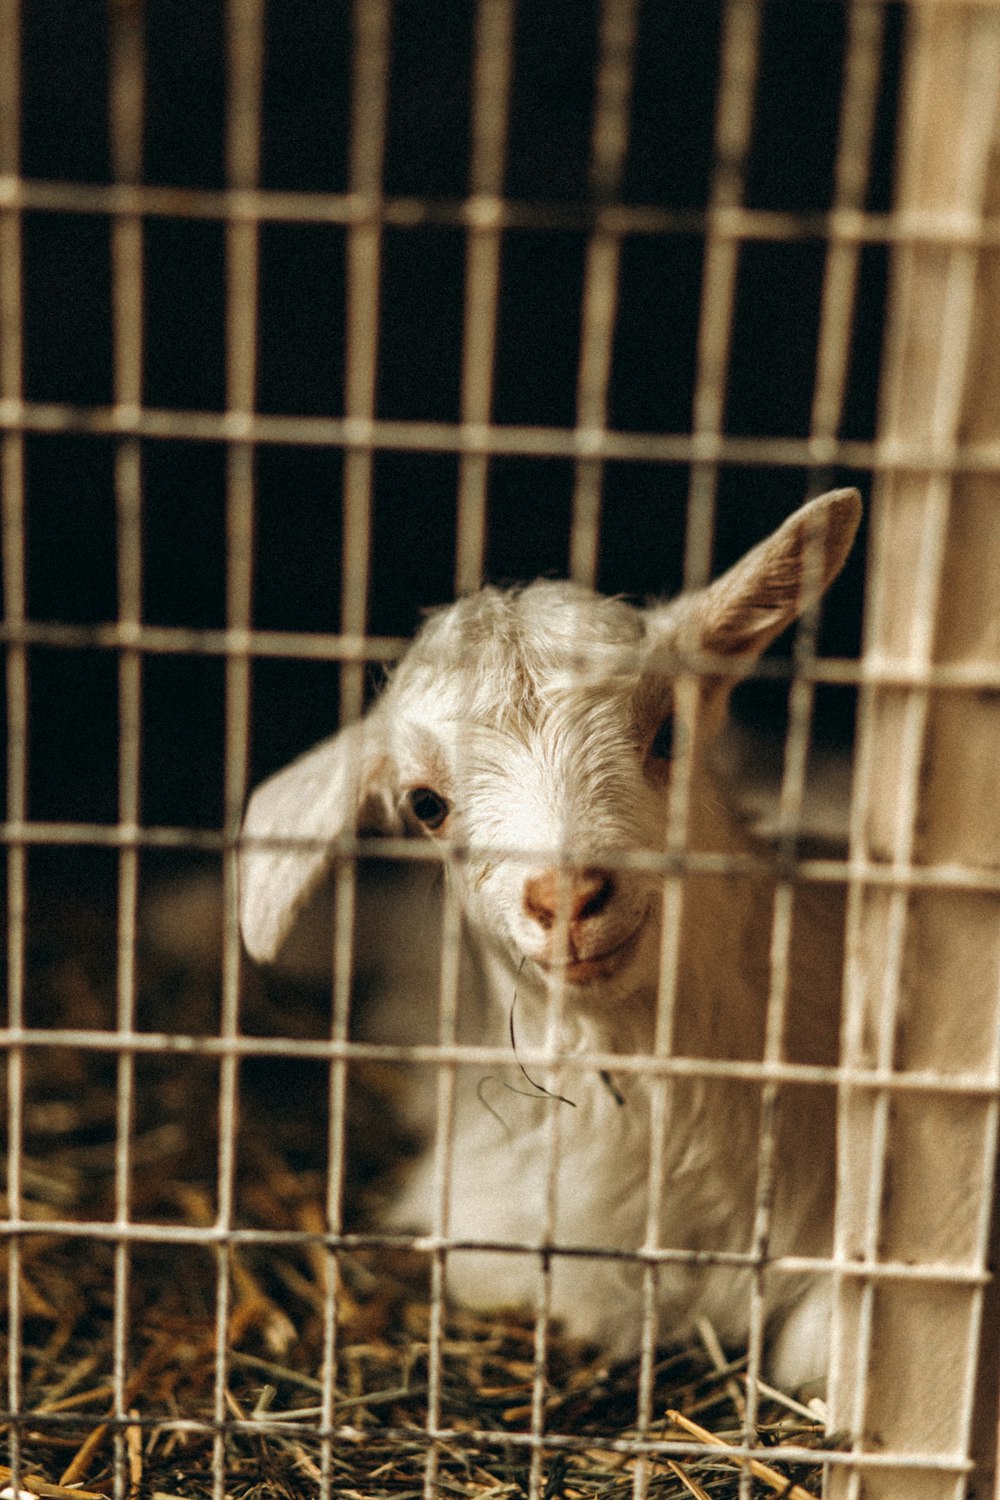 Cabra blanca en jaula durante el día